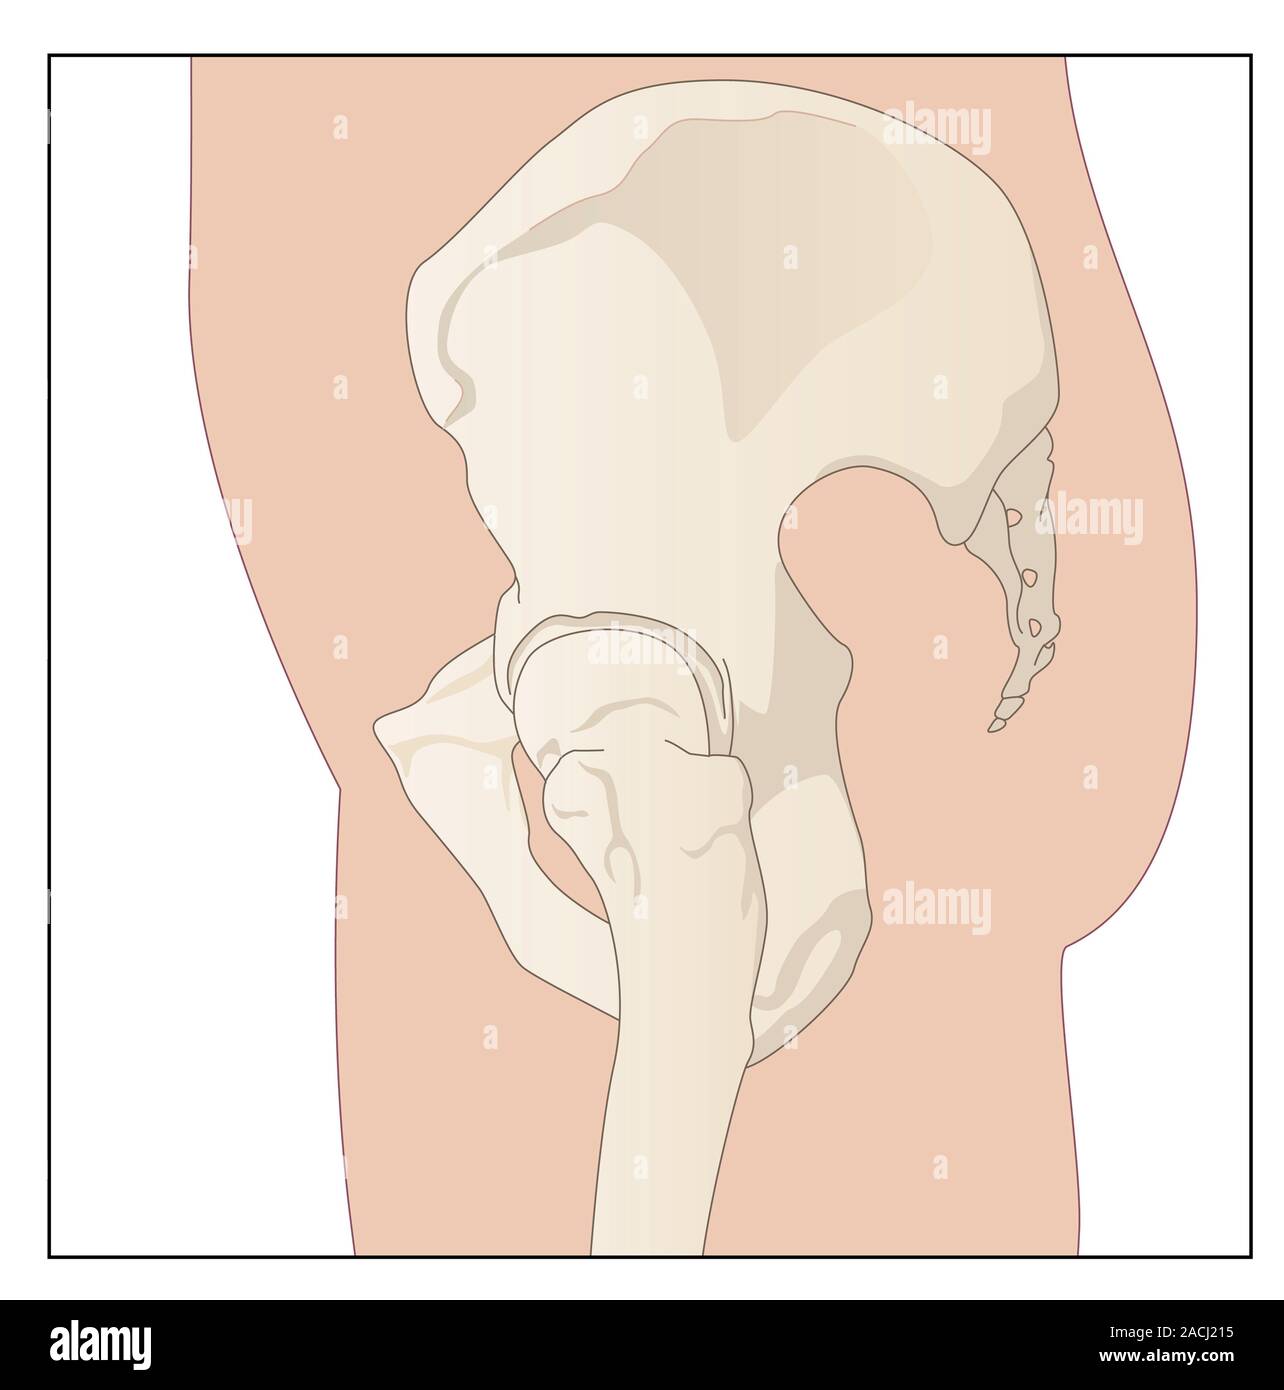 Anatomie de la hanche. Artwork montrant une vue de profil d'un bassin. Une  partie du sacrum, qui forme la base de la colonne vertébrale, est perçu à  l'extrême droite. Il est connecté